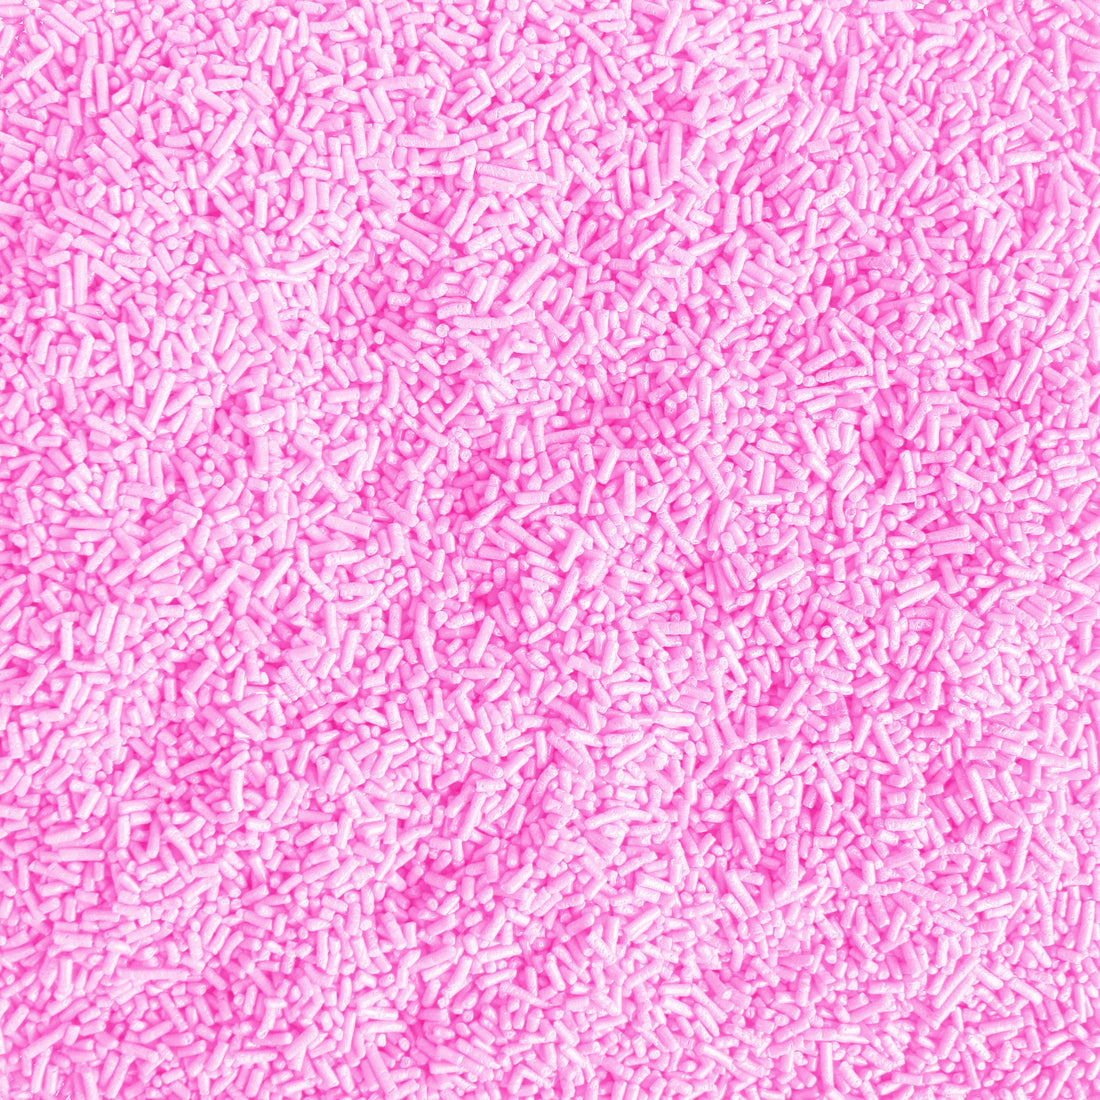 Sprinkle Pop Princess Pink Solid Colored Sprinkles